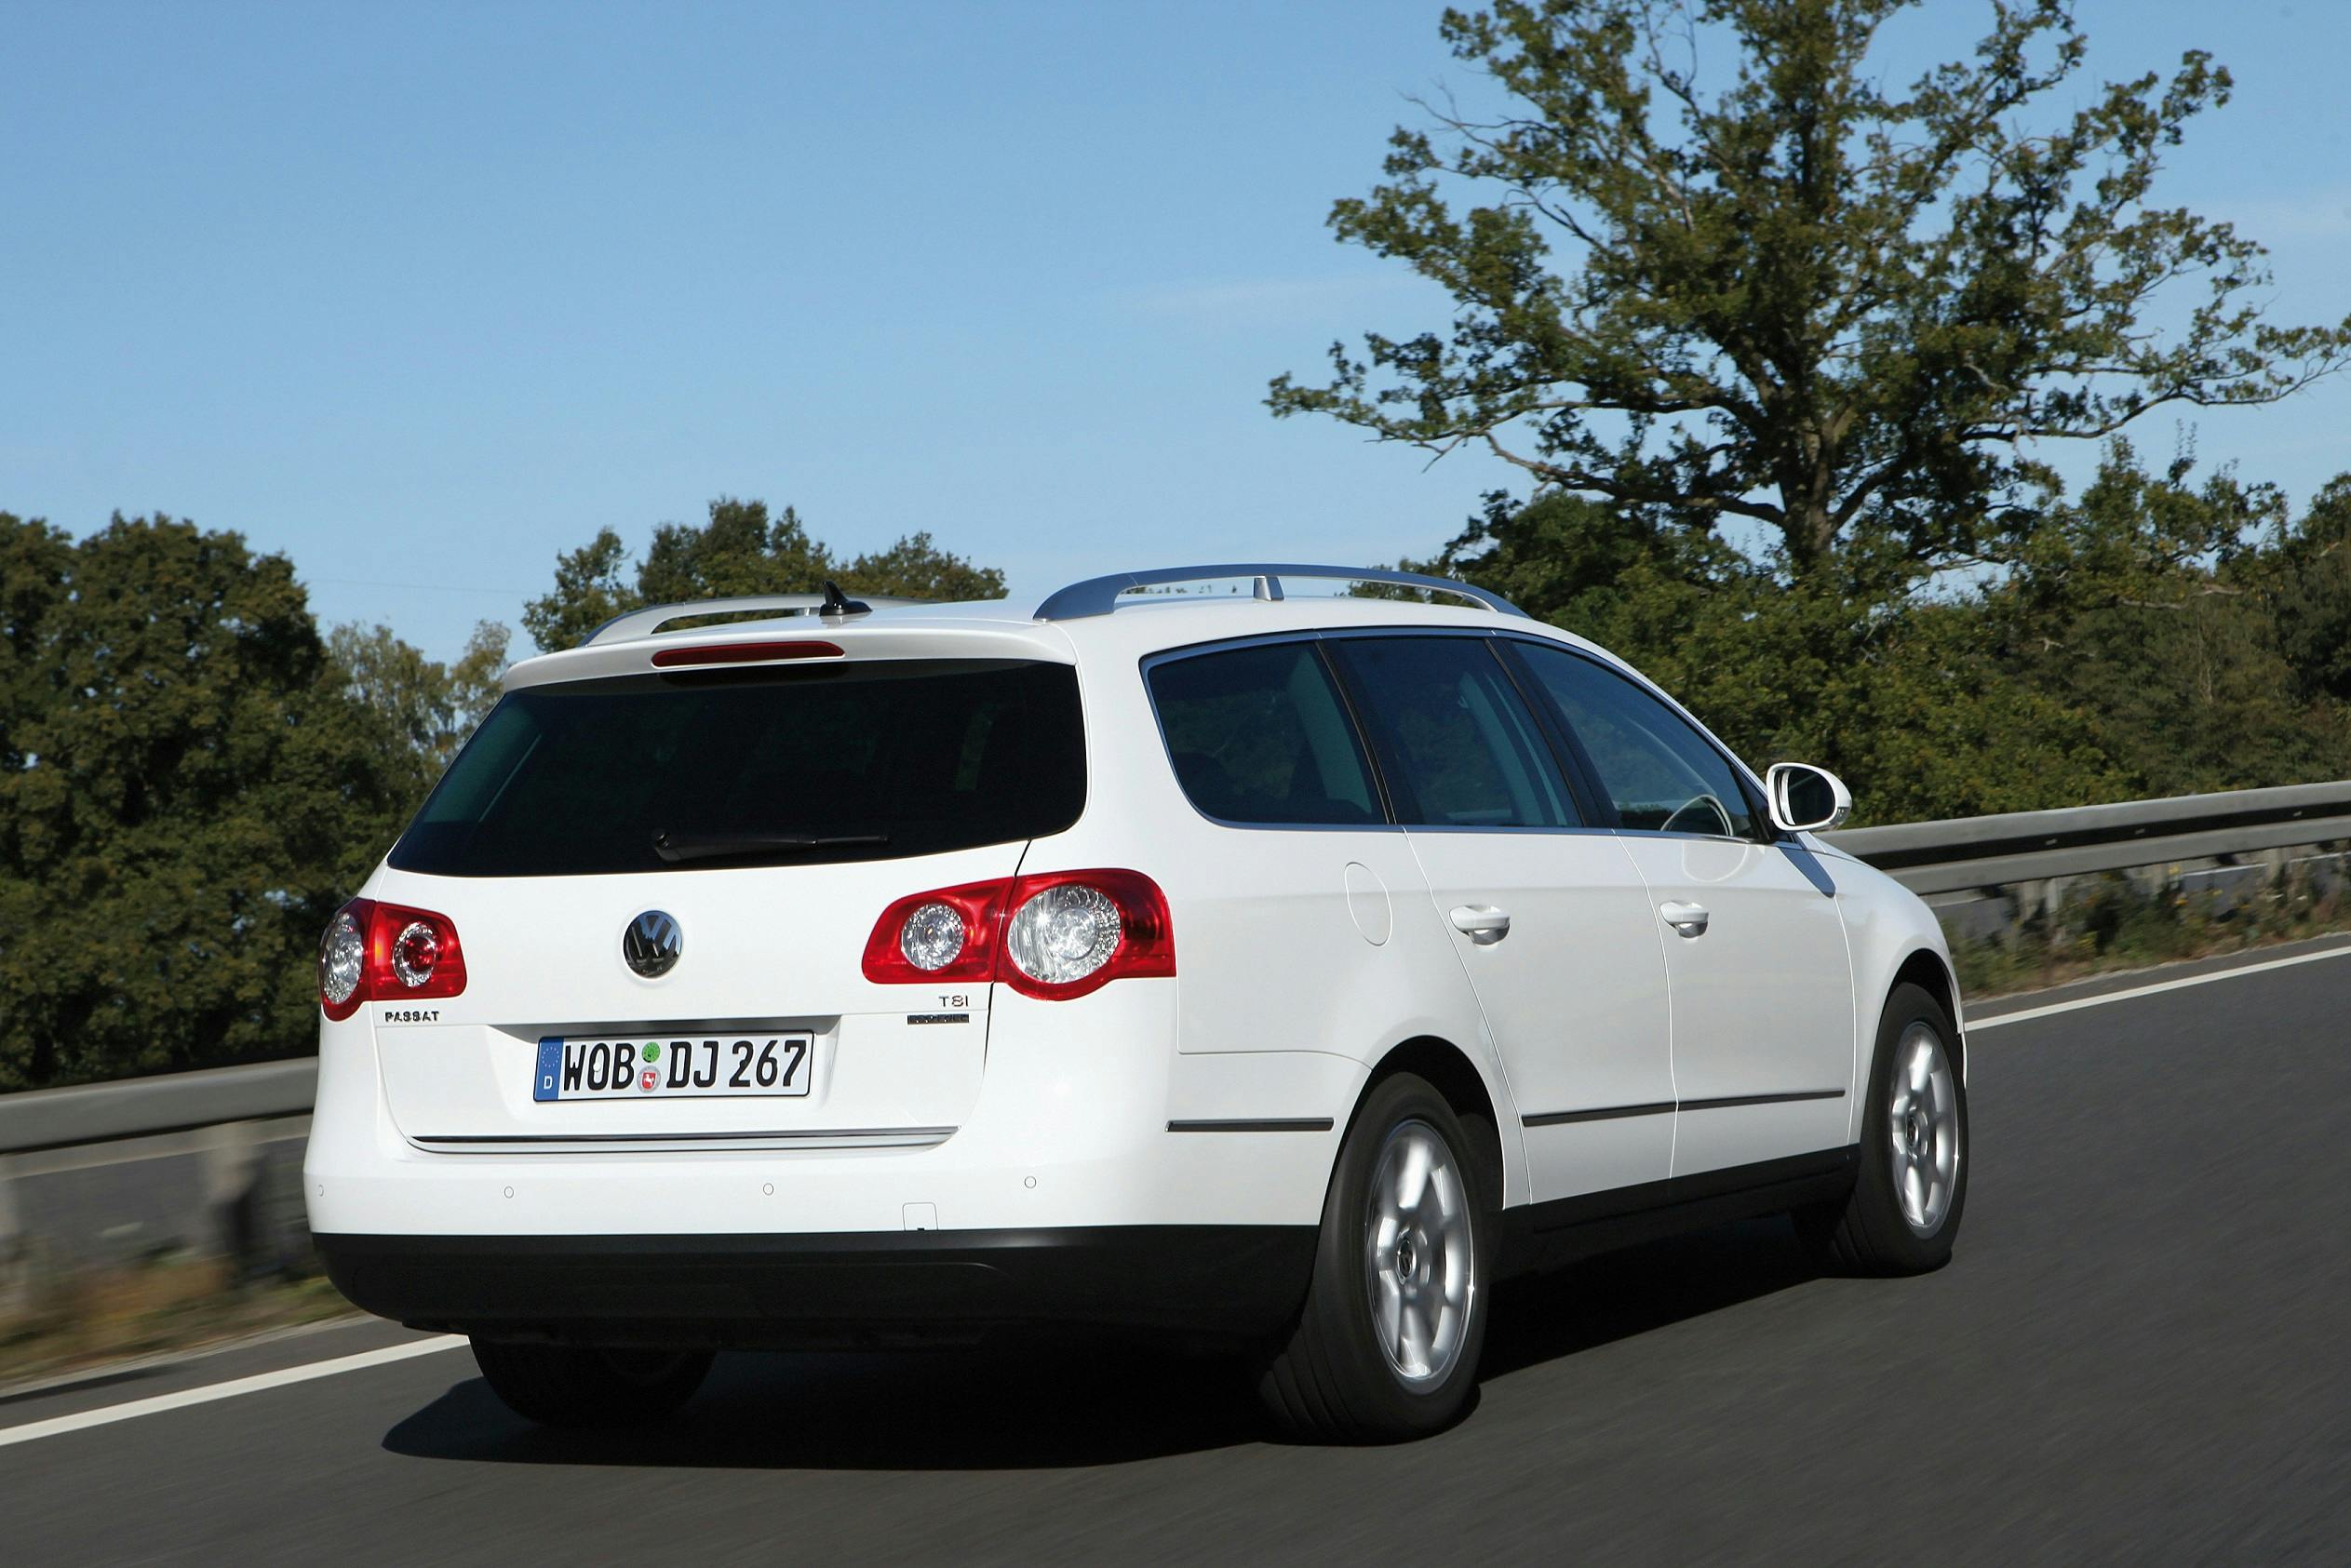 VW Passat b6 универсал. Фольксваген б6 универсал дизель. Фольксваген Passat b6 variant. Volkswagen Passat b6 универсал 2015.